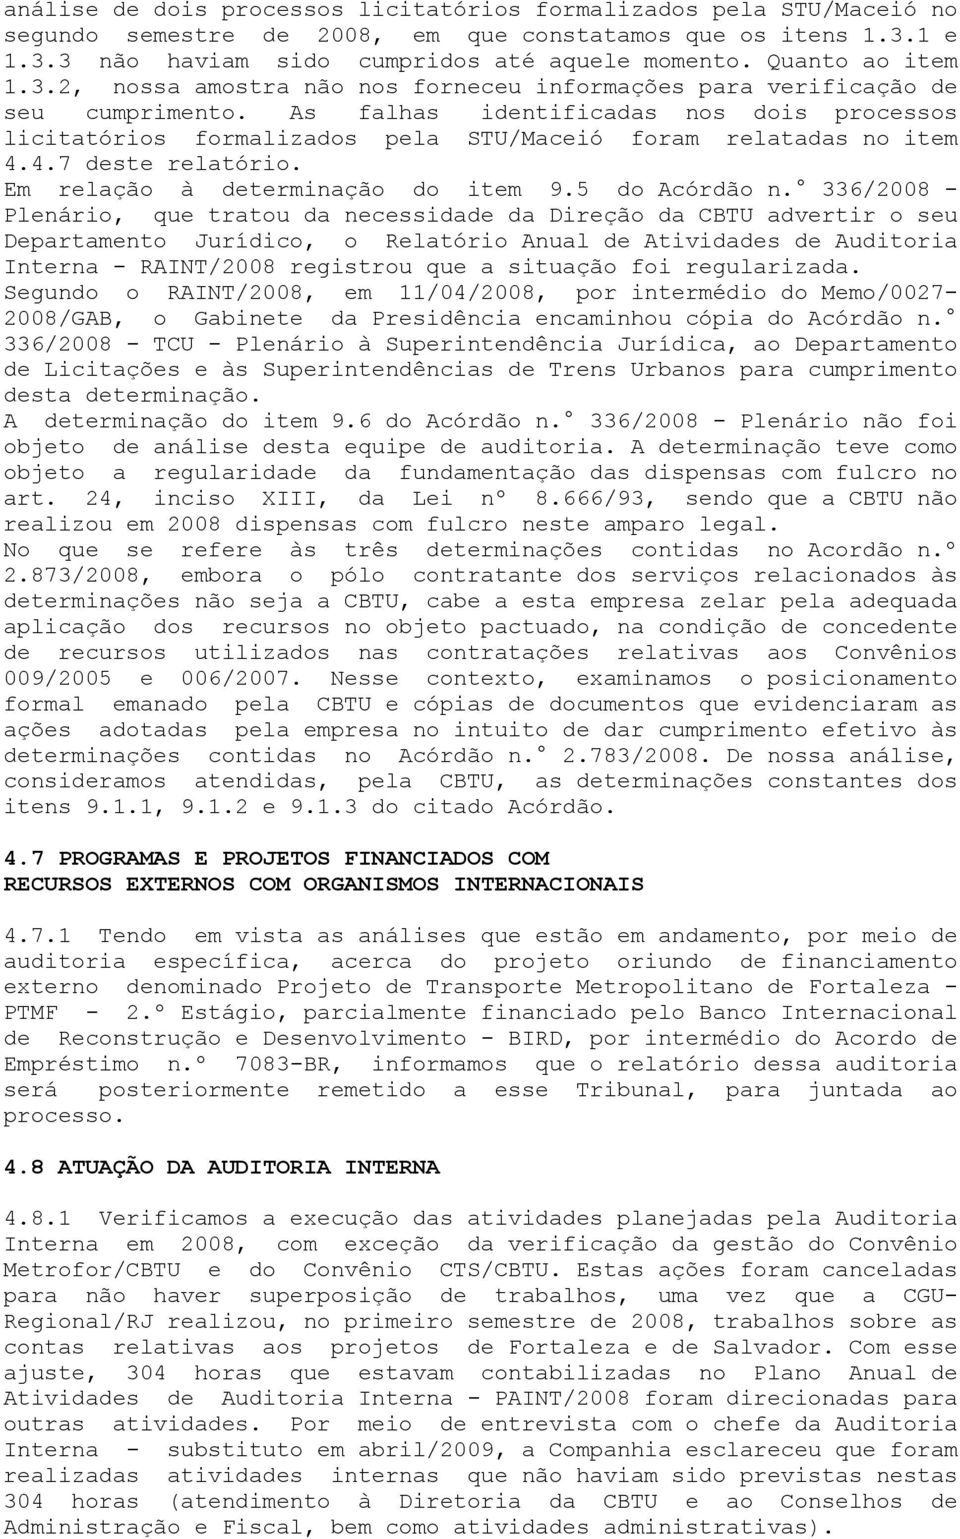 As falhas identificadas nos dois processos licitatórios formalizados pela STU/Maceió foram relatadas no item 4.4.7 deste relatório. Em relação à determinação do item 9.5 do Acórdão n.